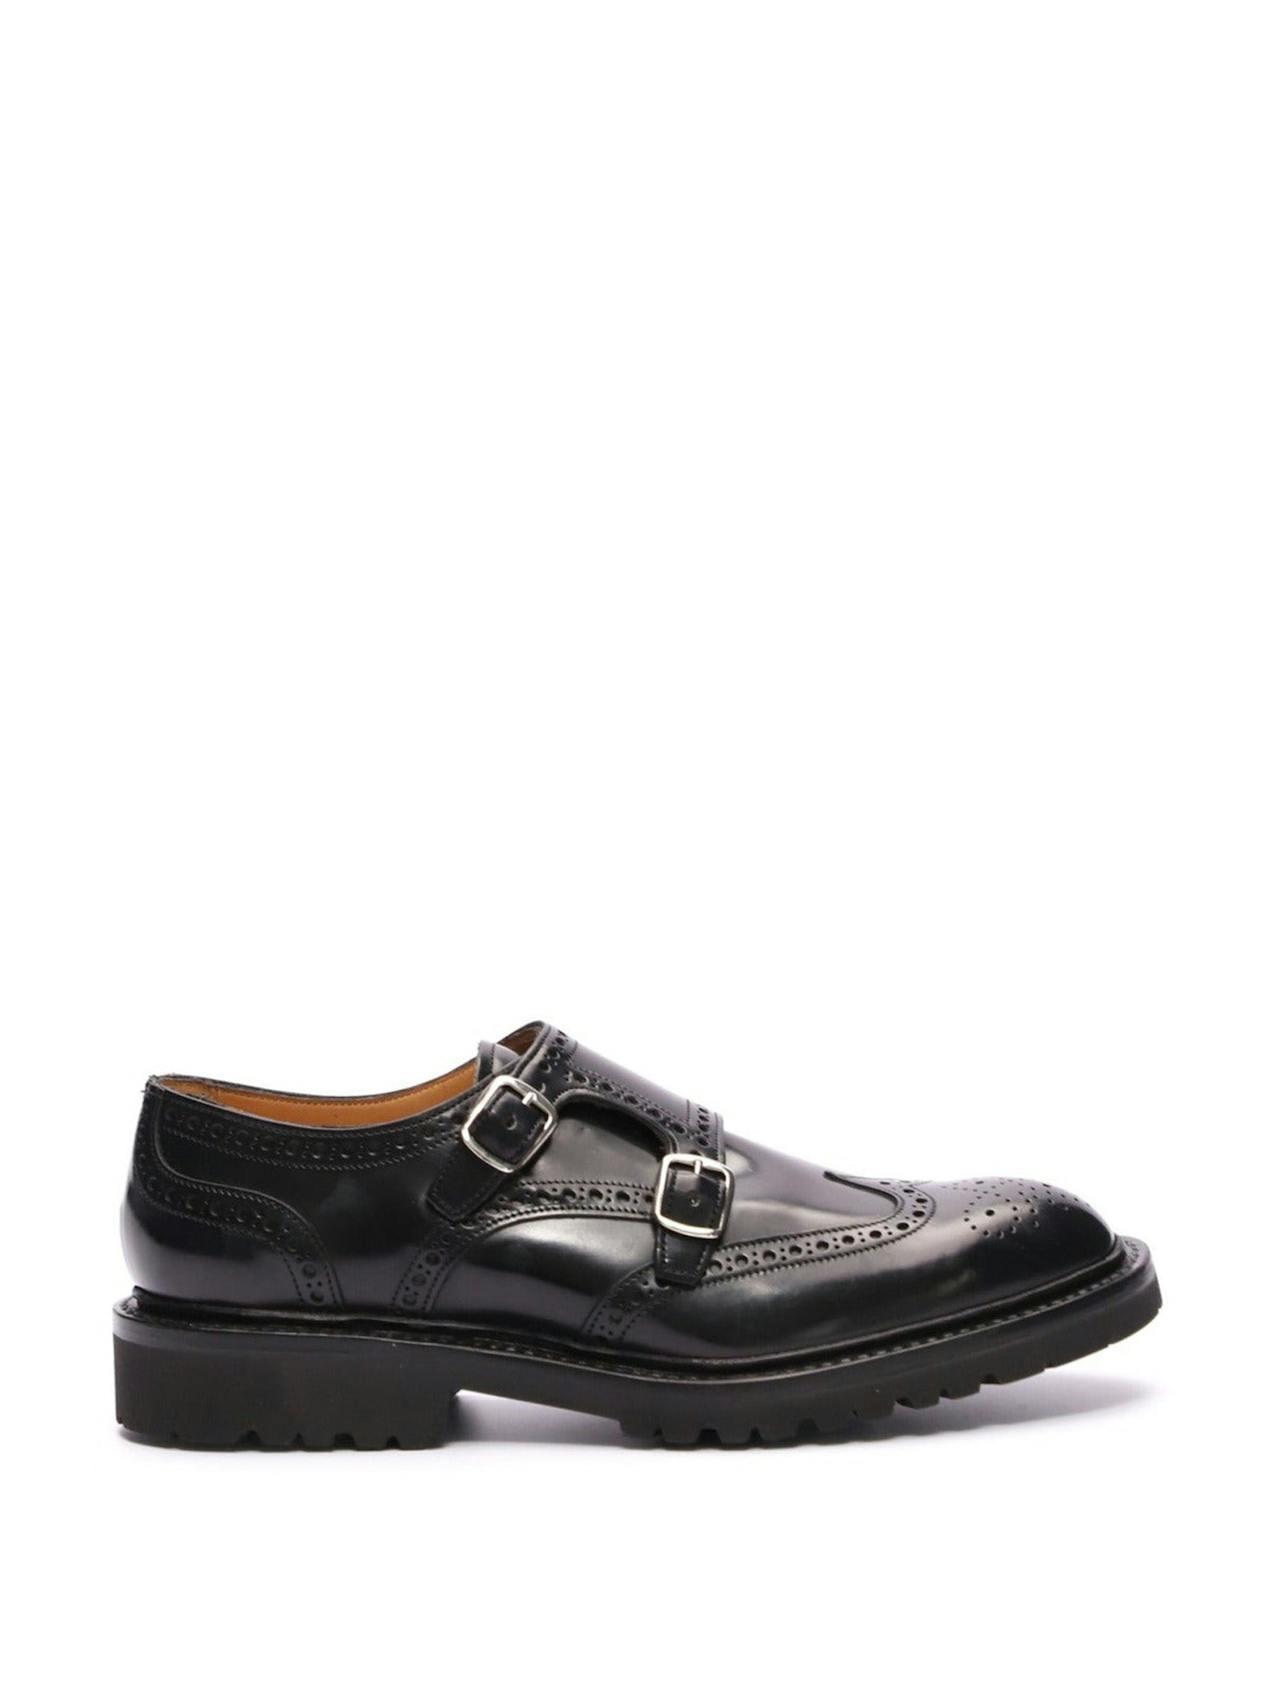 Black Virginia Double Monk shoes